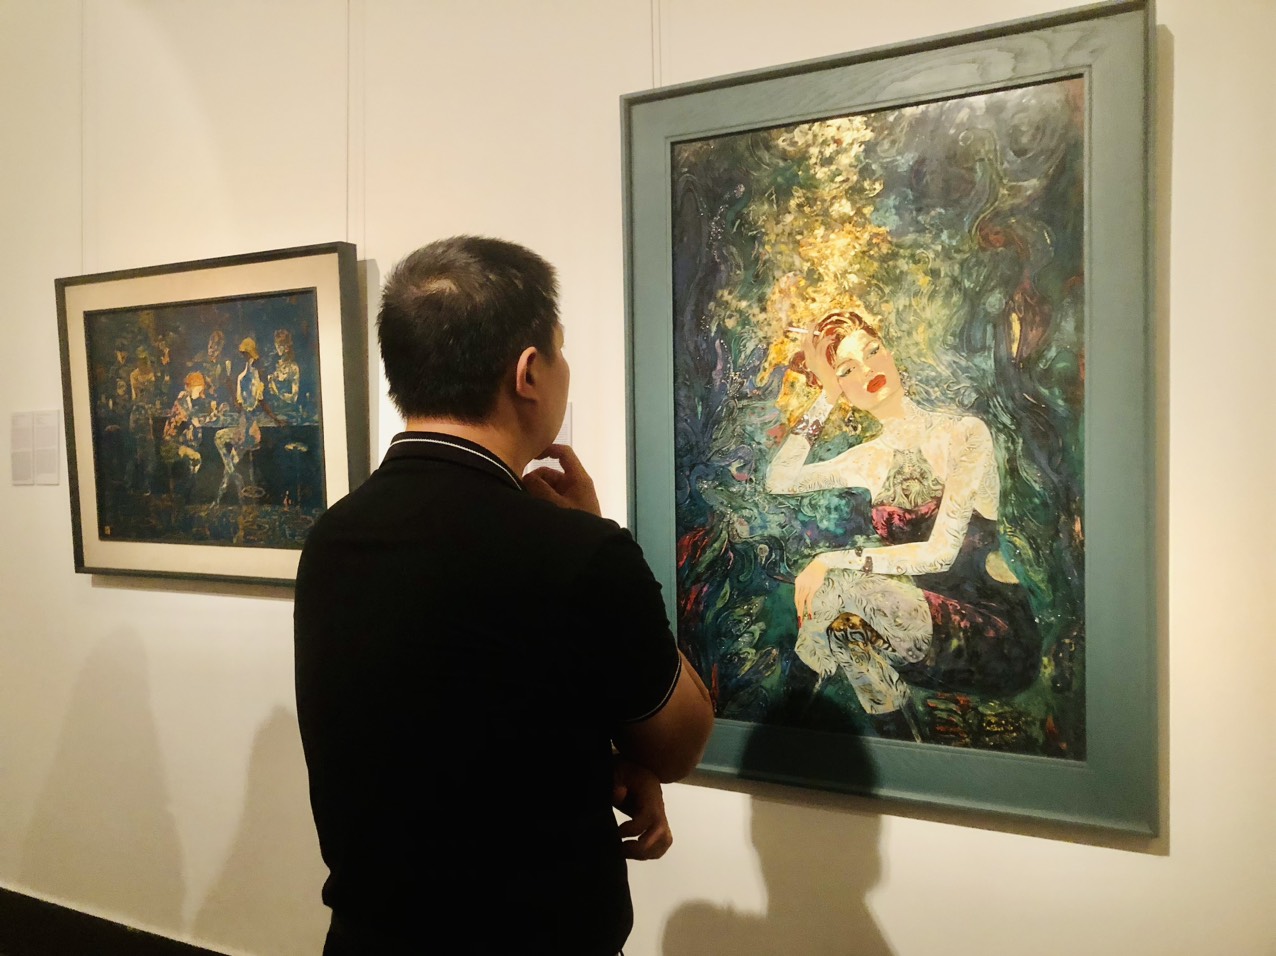  Ngỡ ngàng với 3 bức tranh nude trong triển lãm tranh sơn mài ở Bảo tàng Mỹ thuật Việt Nam   - Ảnh 1.